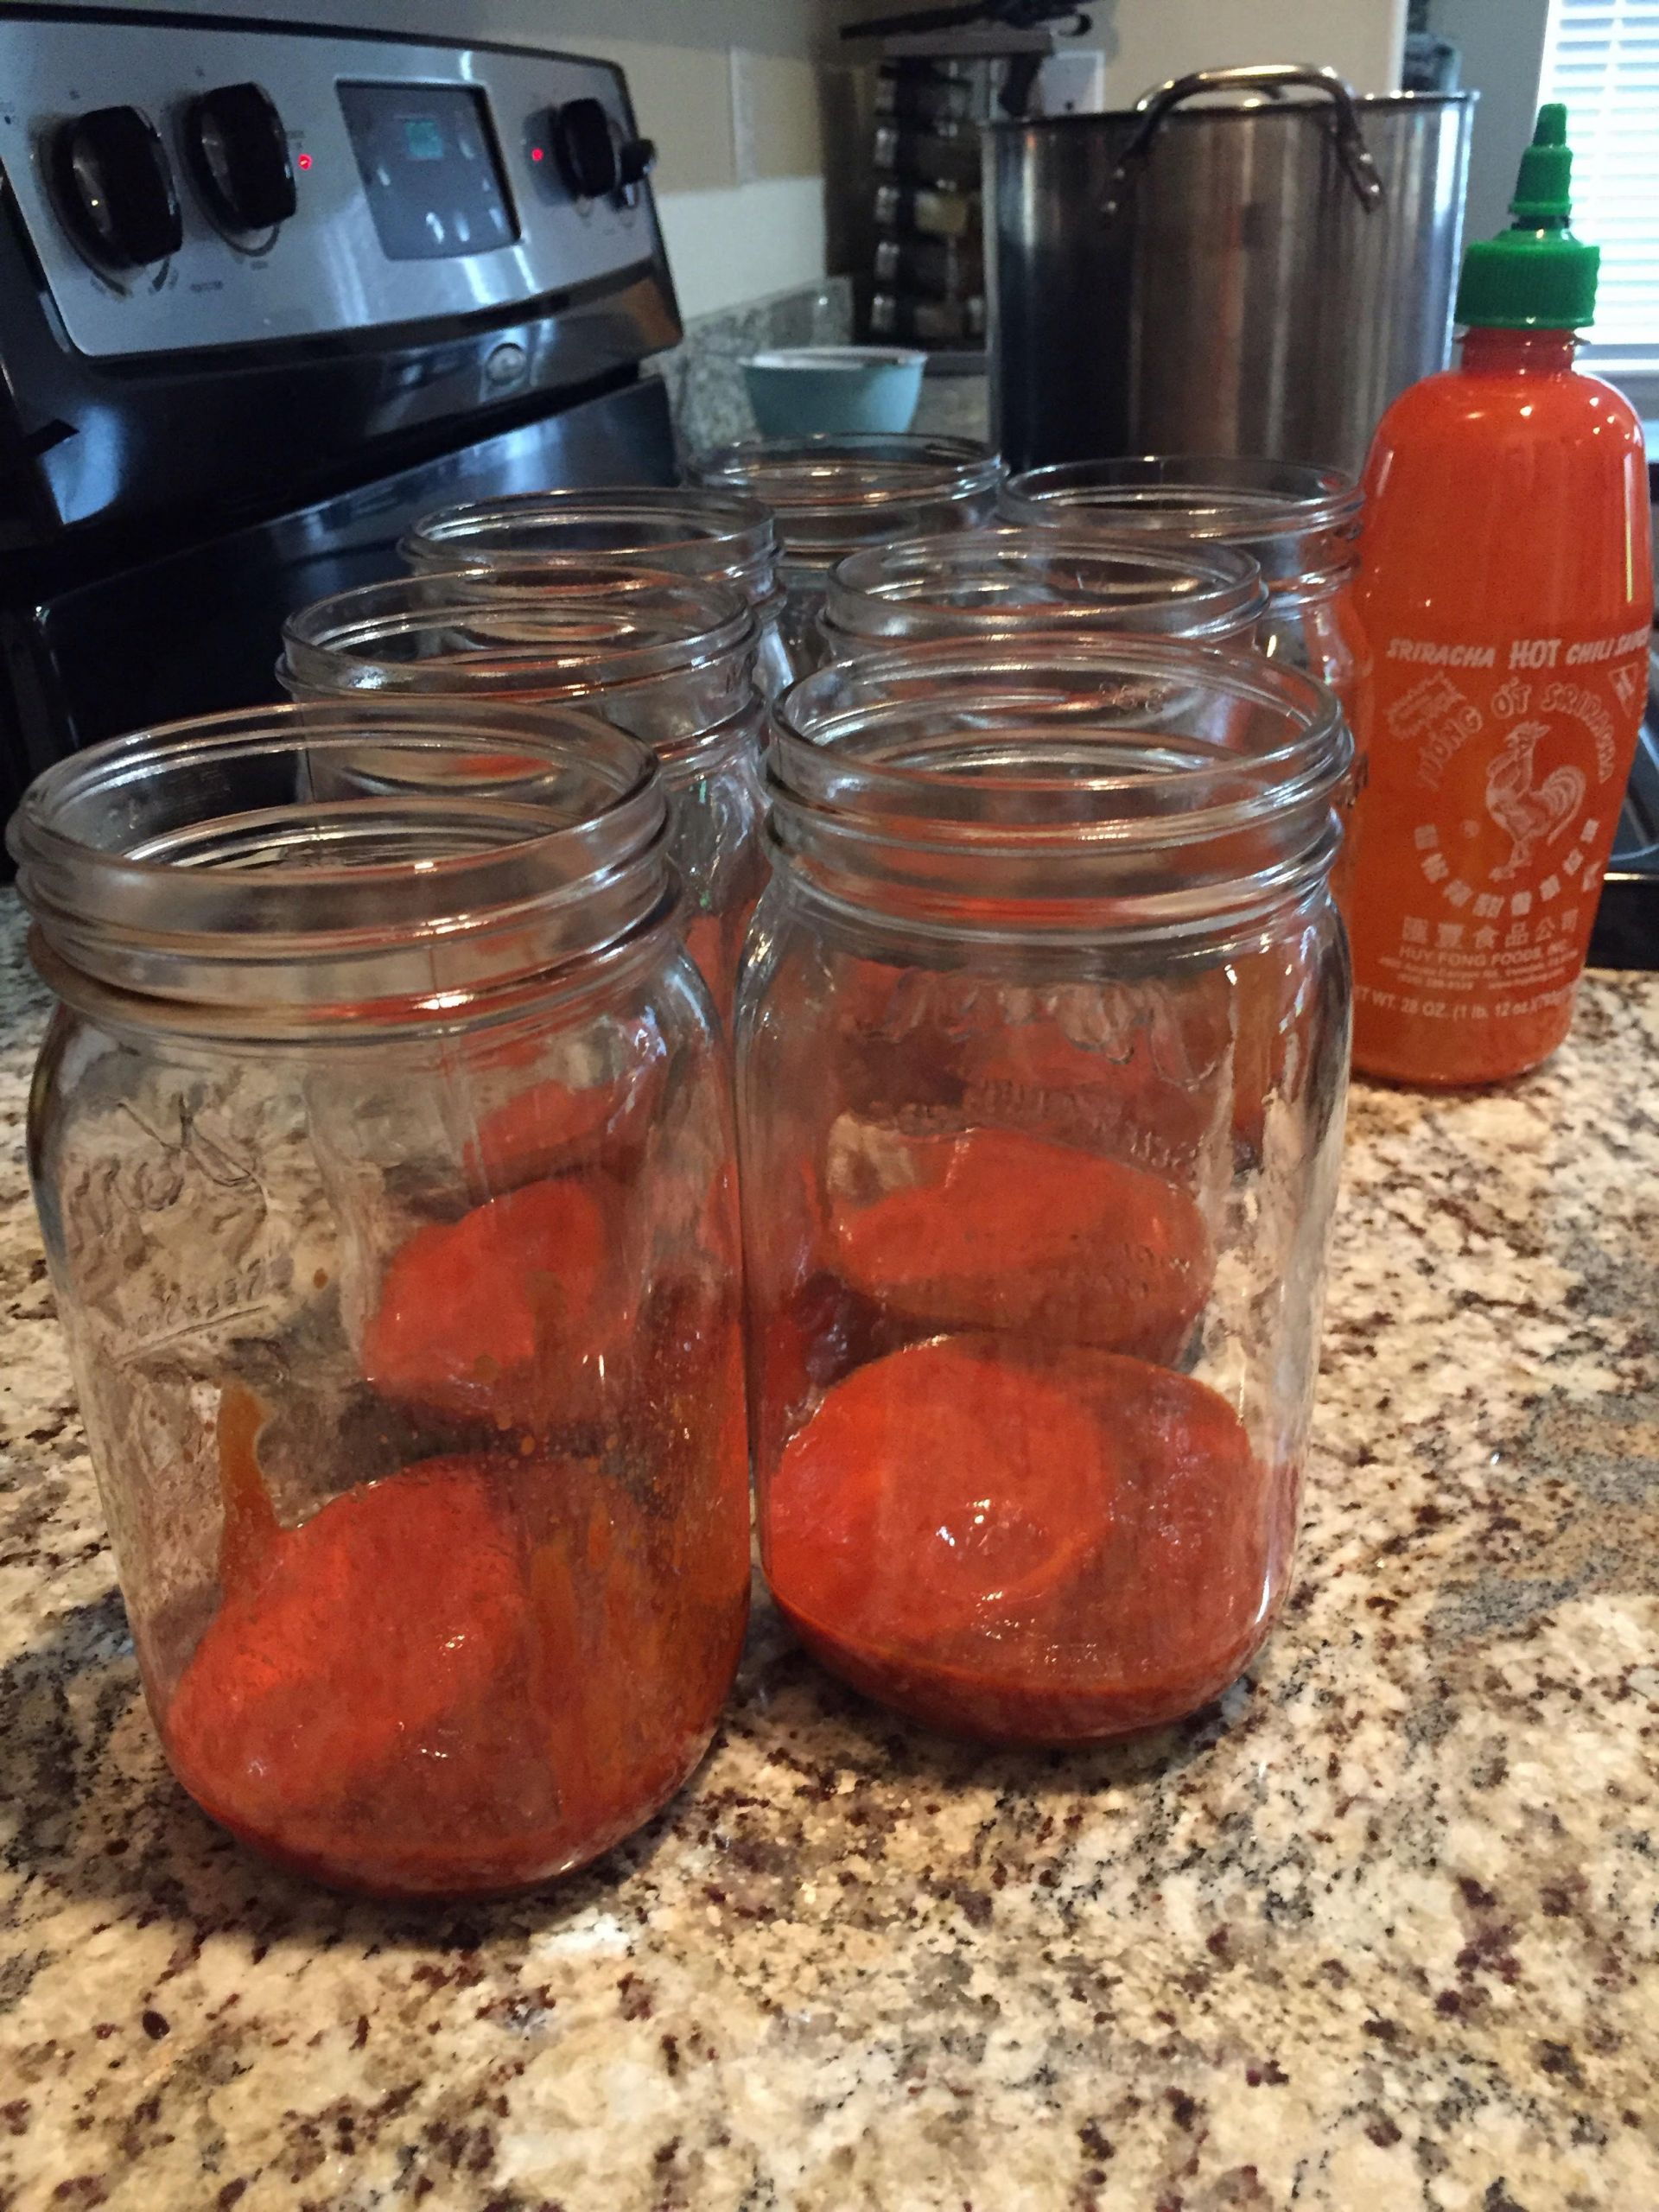 Sriracha Pickled Eggs
 Sriracha Pickled Eggs Recipe